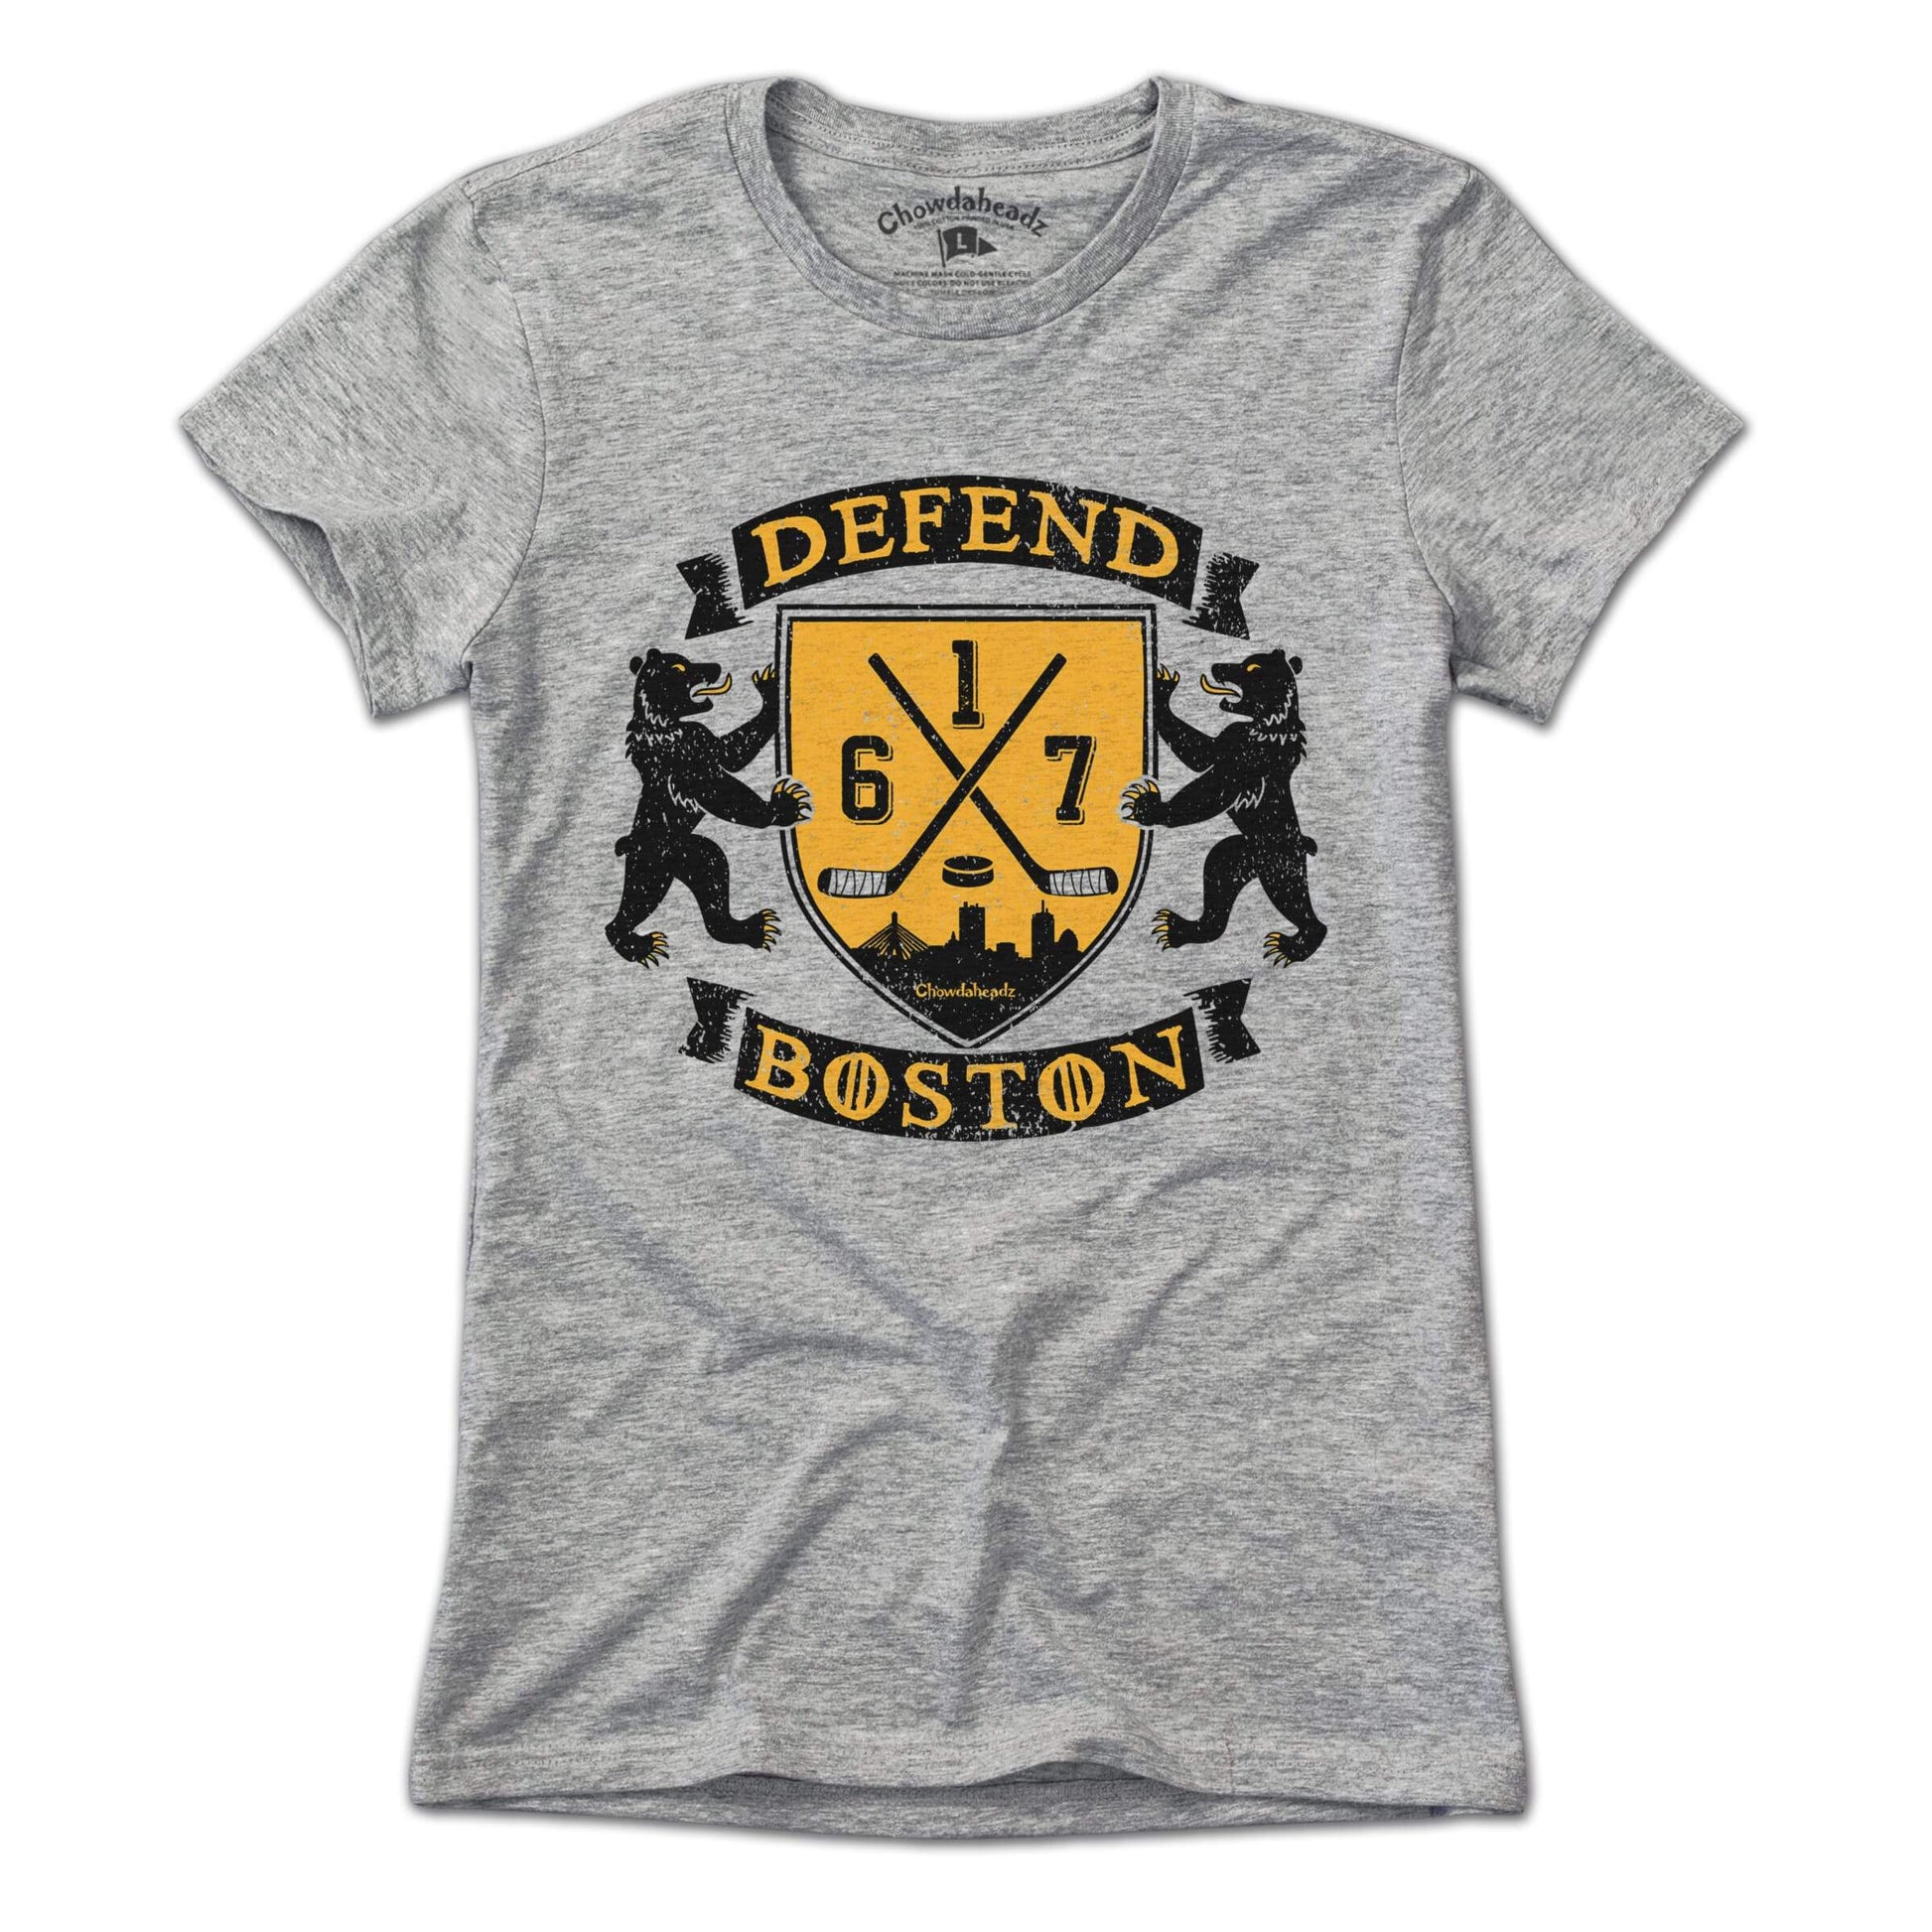 Defend Boston Hockey Shield T-Shirt - Chowdaheadz